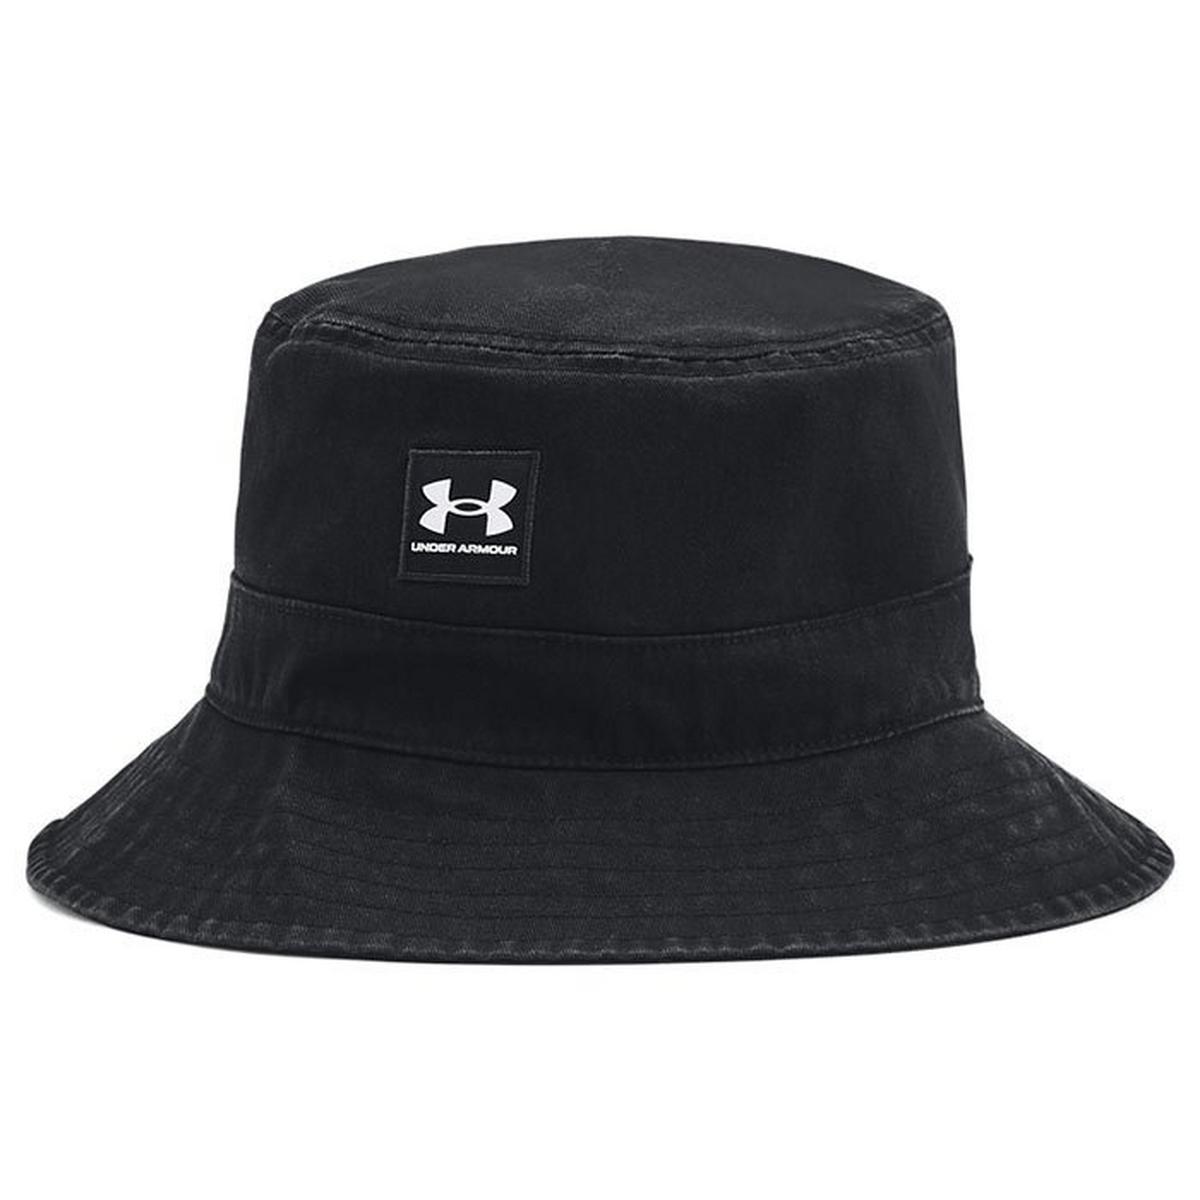 https://cdn.media.amplience.net/i/sportinglife/25759341_BLACK_0/Mens-Branded-Bucket-Hat-BLACK?$default$